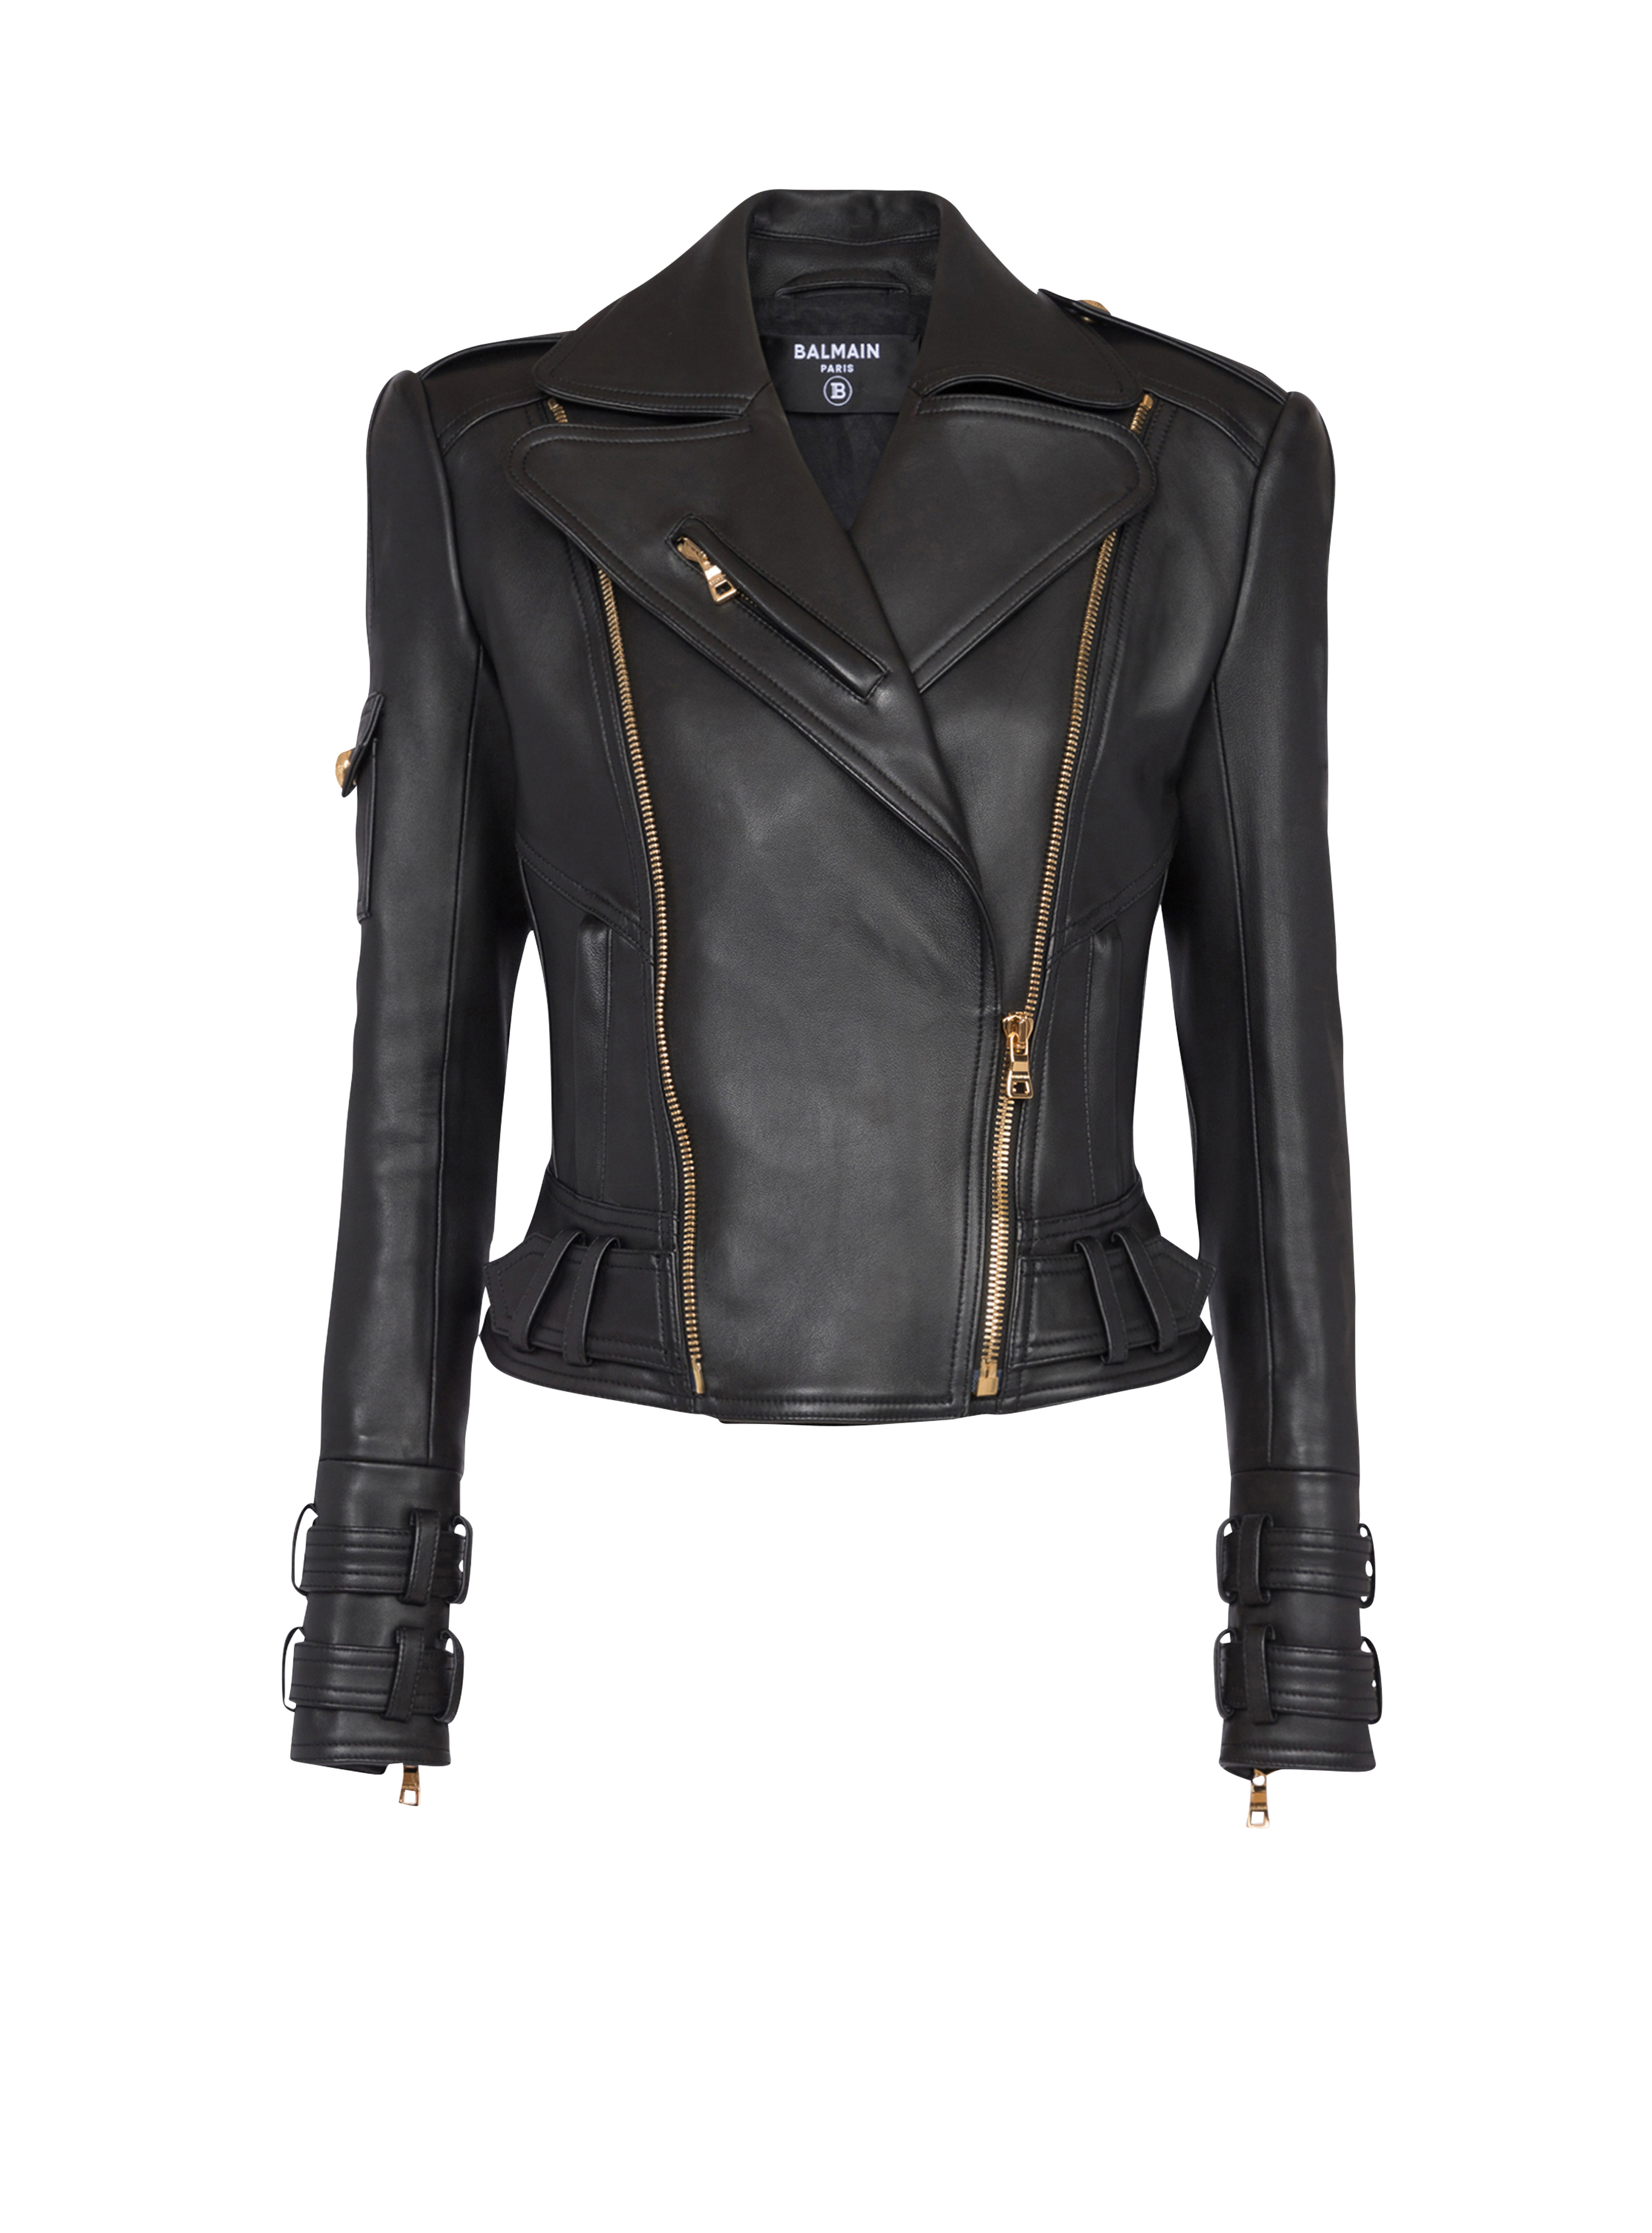 Leather biker jacket, black